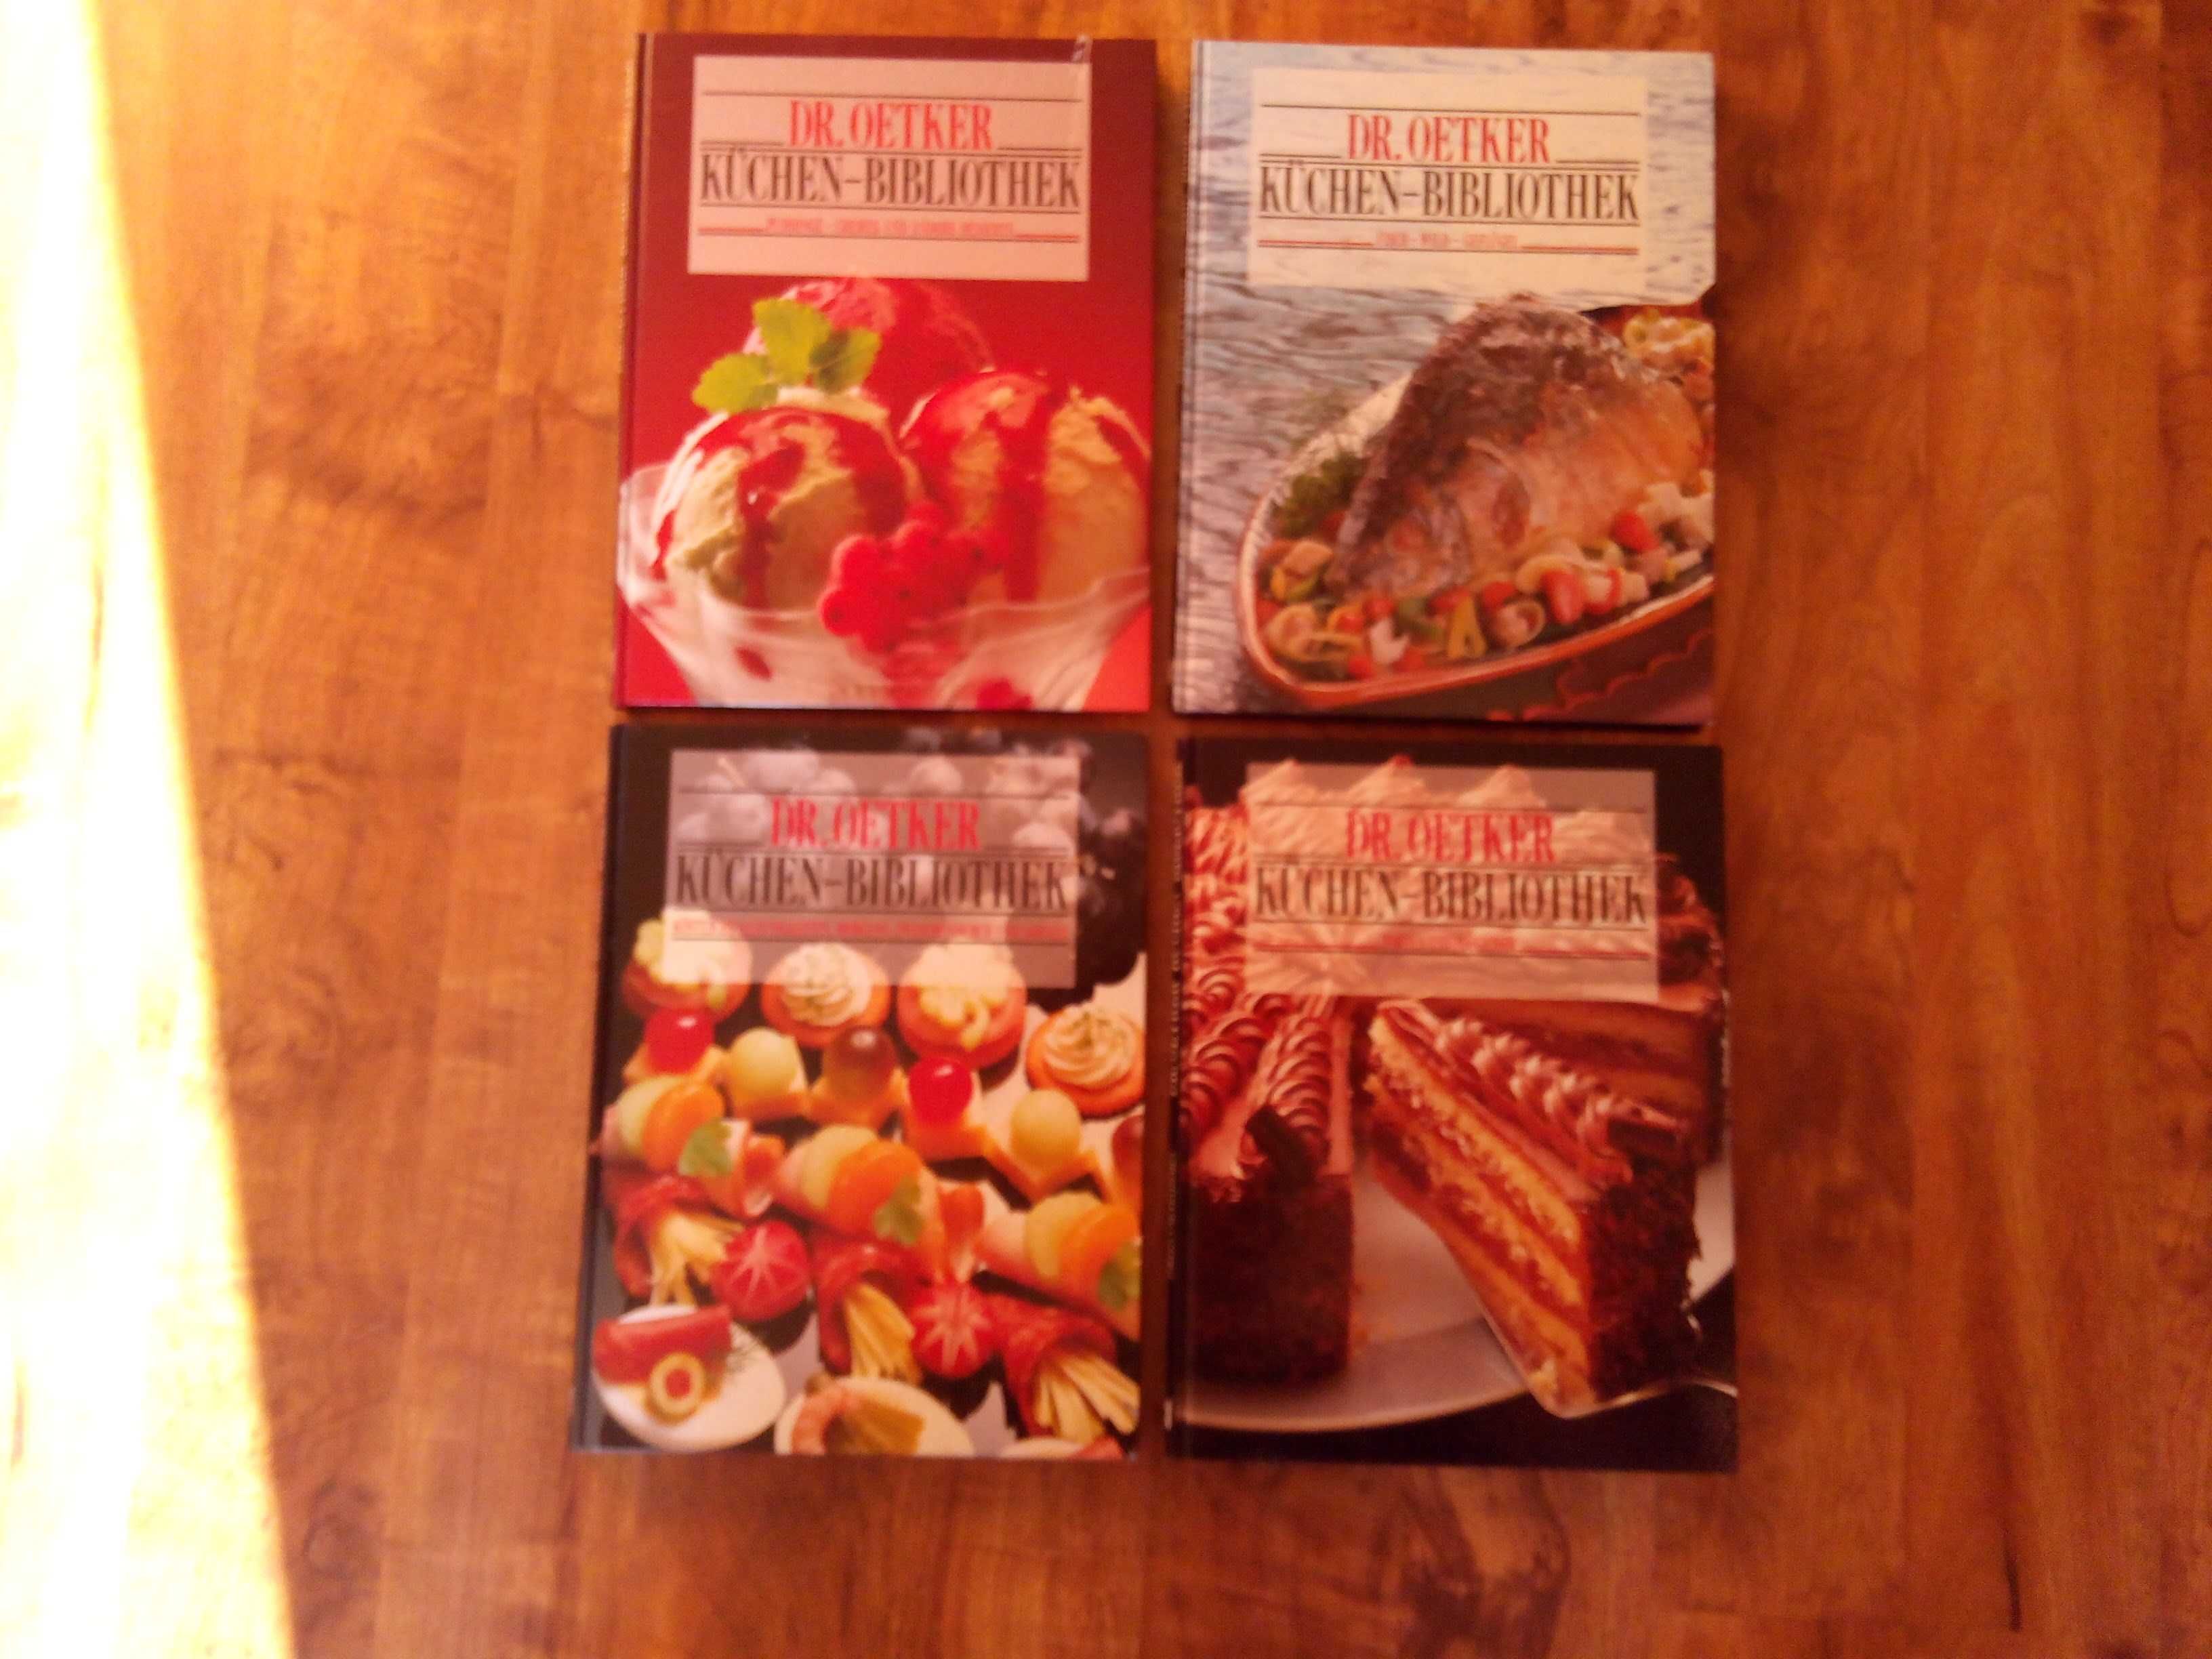 Książki z przepisami ryby, desery, ciasta, przekąski po Niemiecku